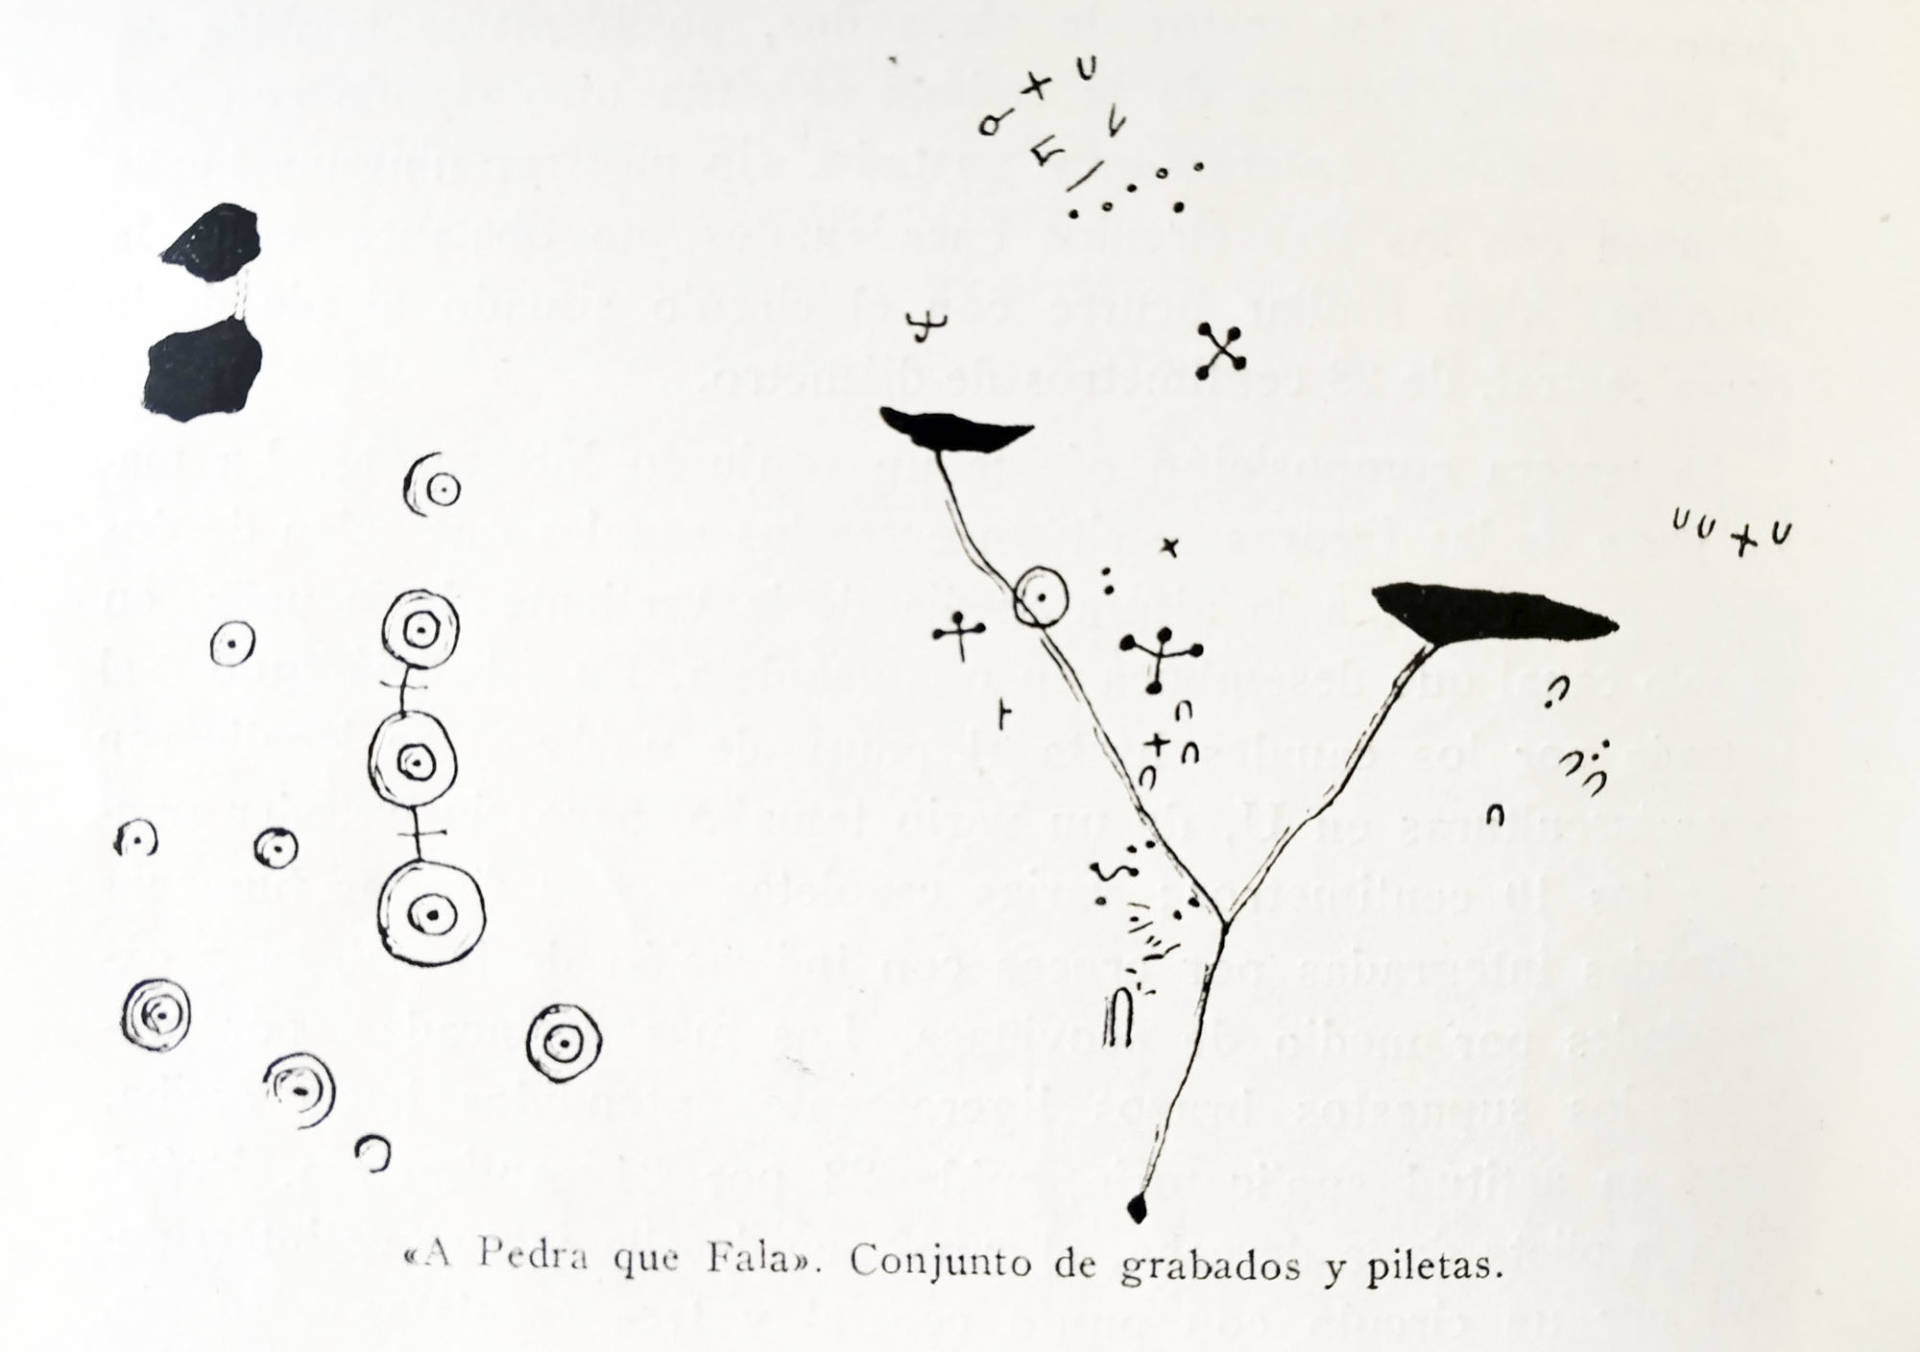 Croquis de los grabados de A Pedra que Fala. C. García Martínez. 1968.